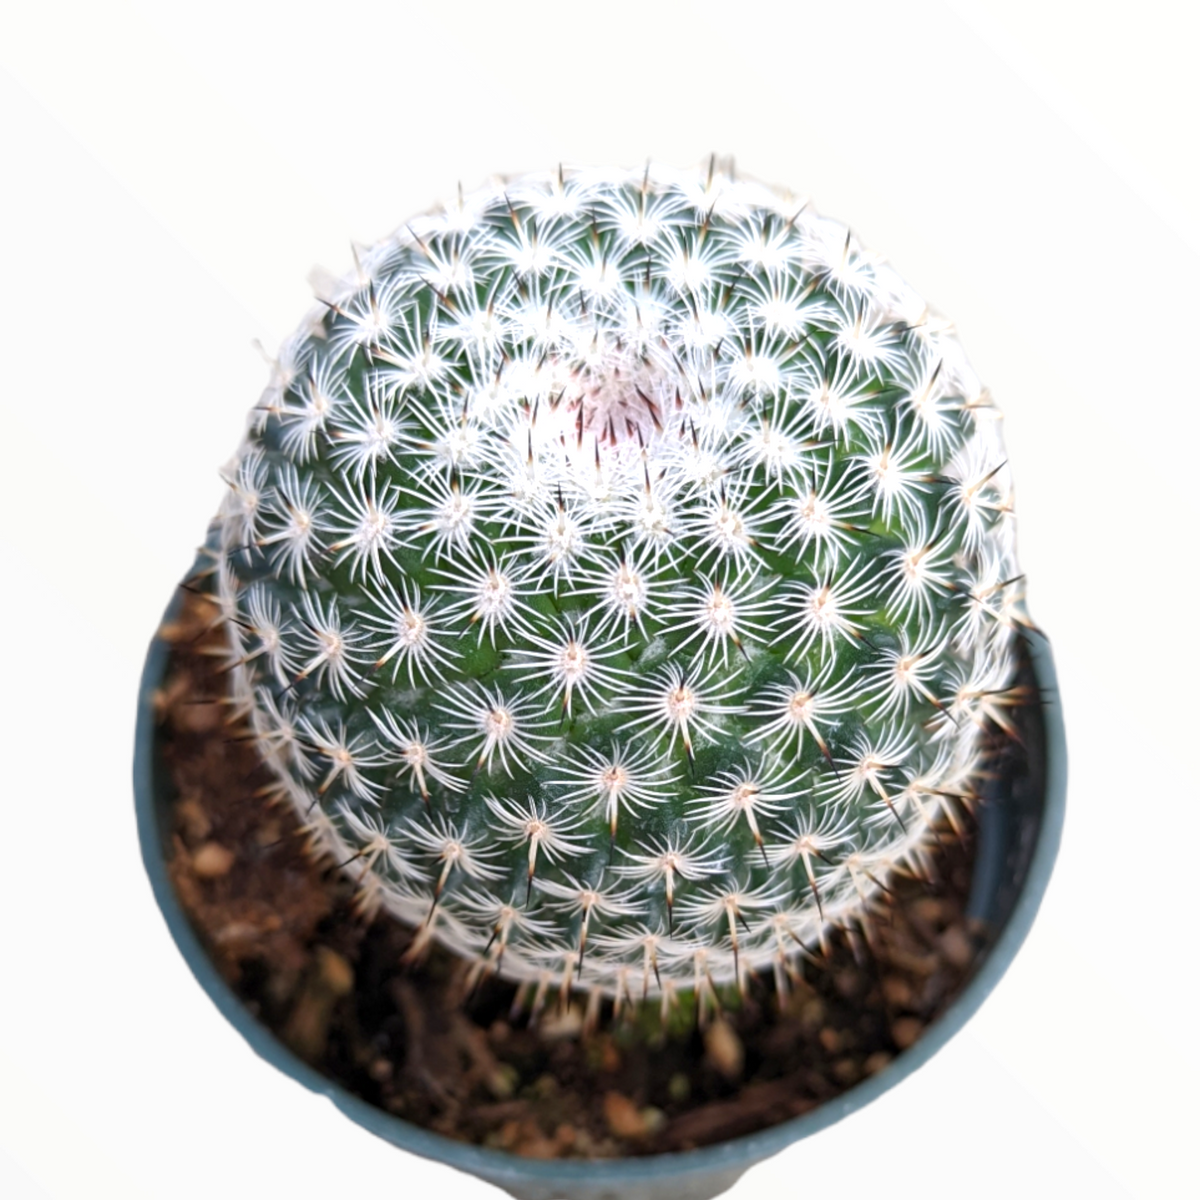 Mammillaria matudae - Thumb Cactus - Succulents Depot